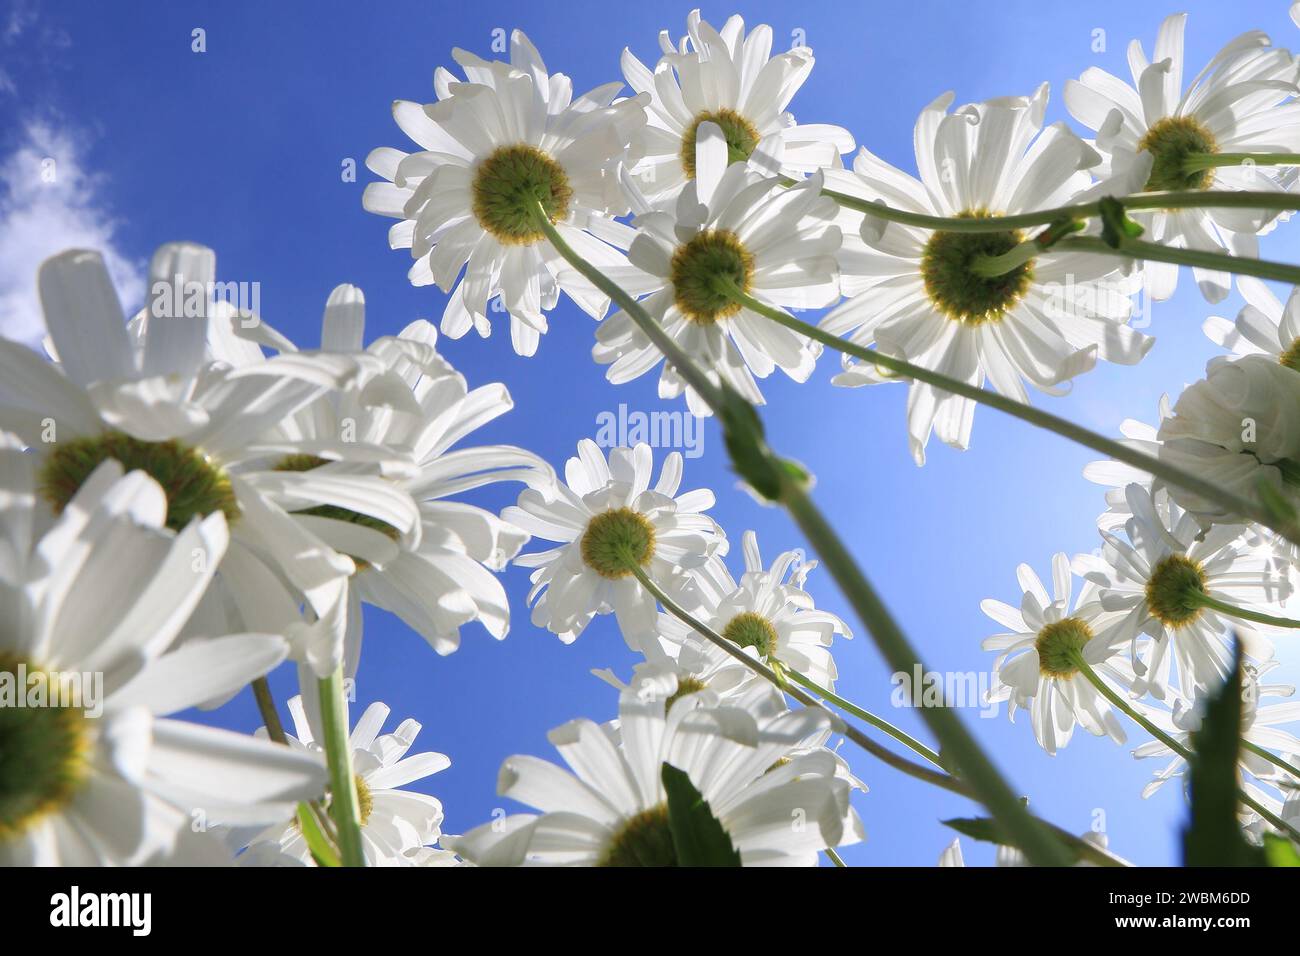 Daisy fiori contro un cielo azzurro. Foto Stock